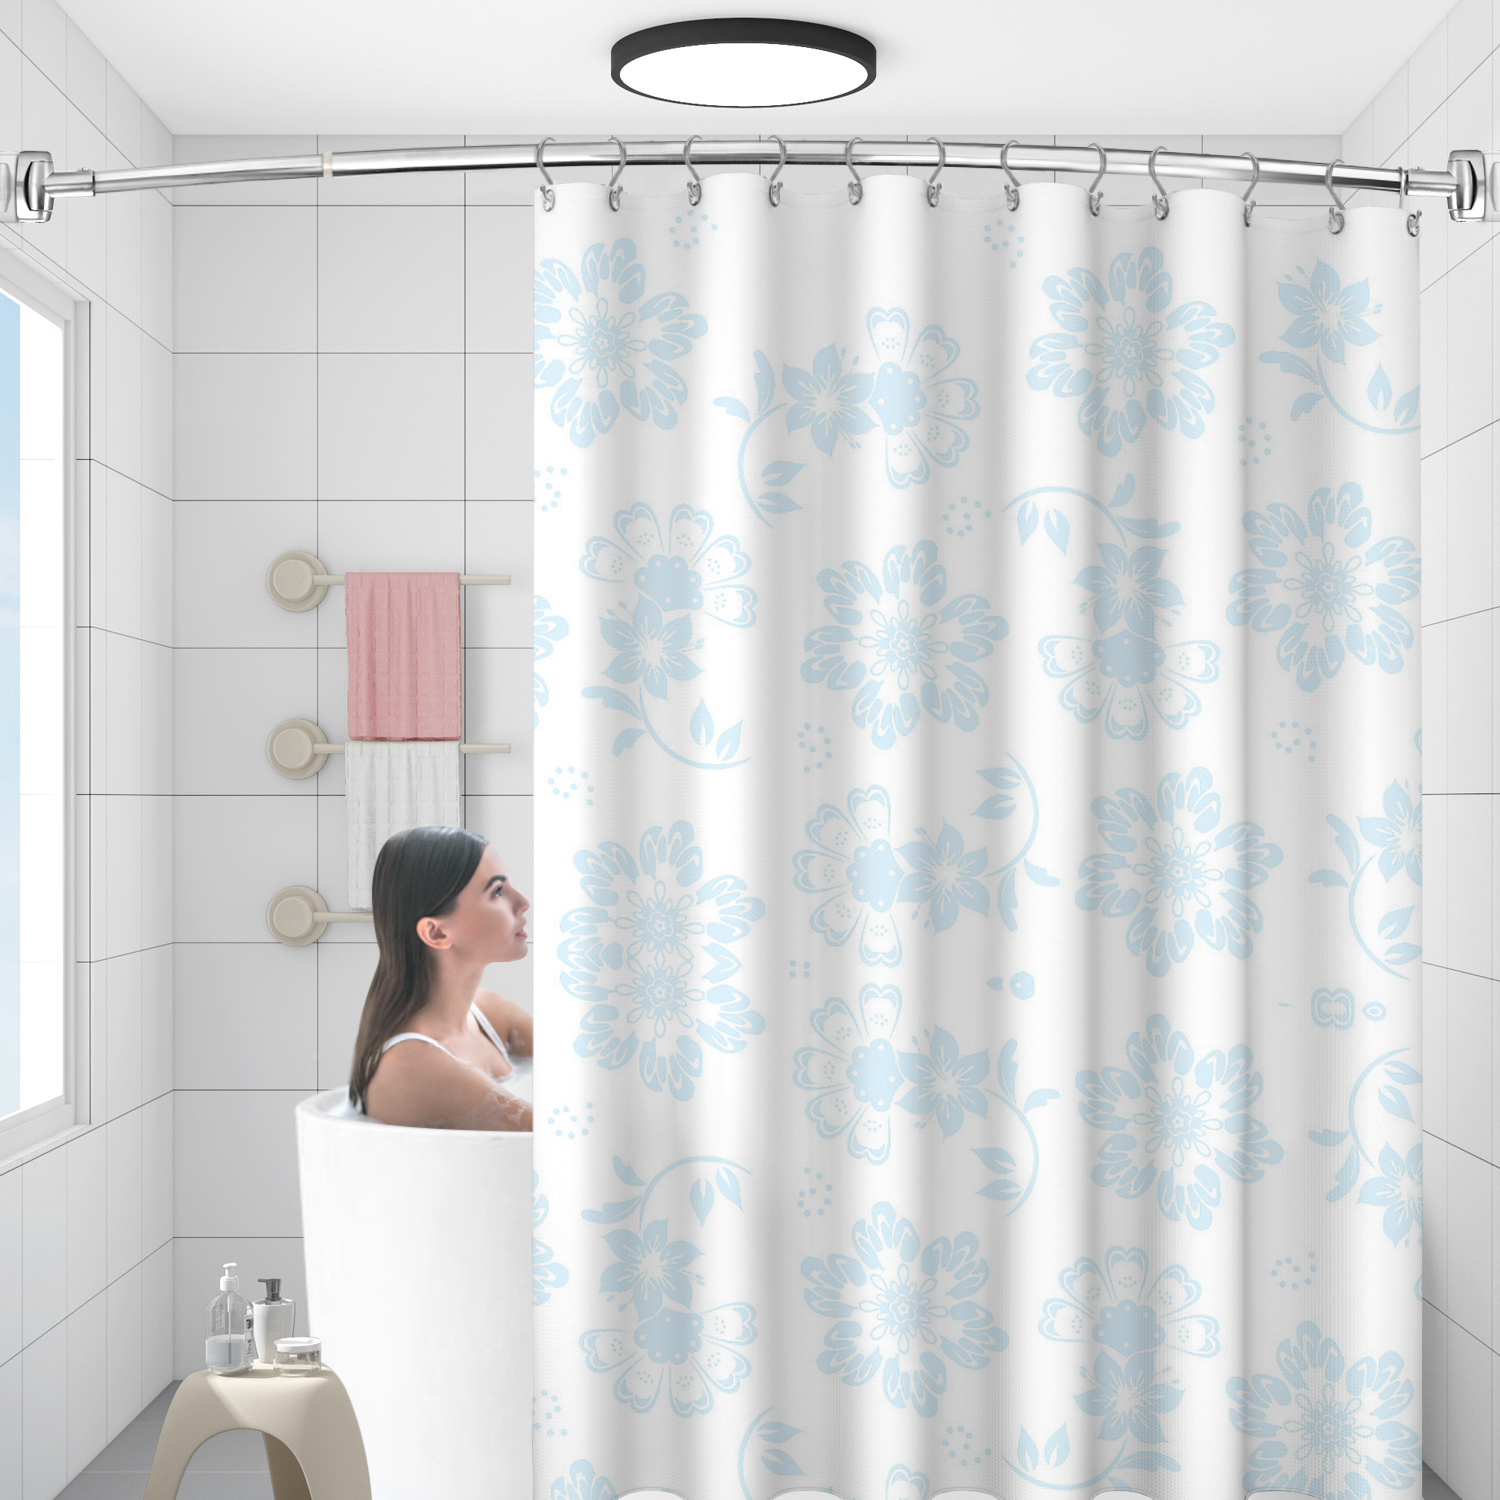 Exquisite verchromte, verstellbare, abgerundete, gebogene Edelstahl-Duschstangen, speziell für die Badewanne